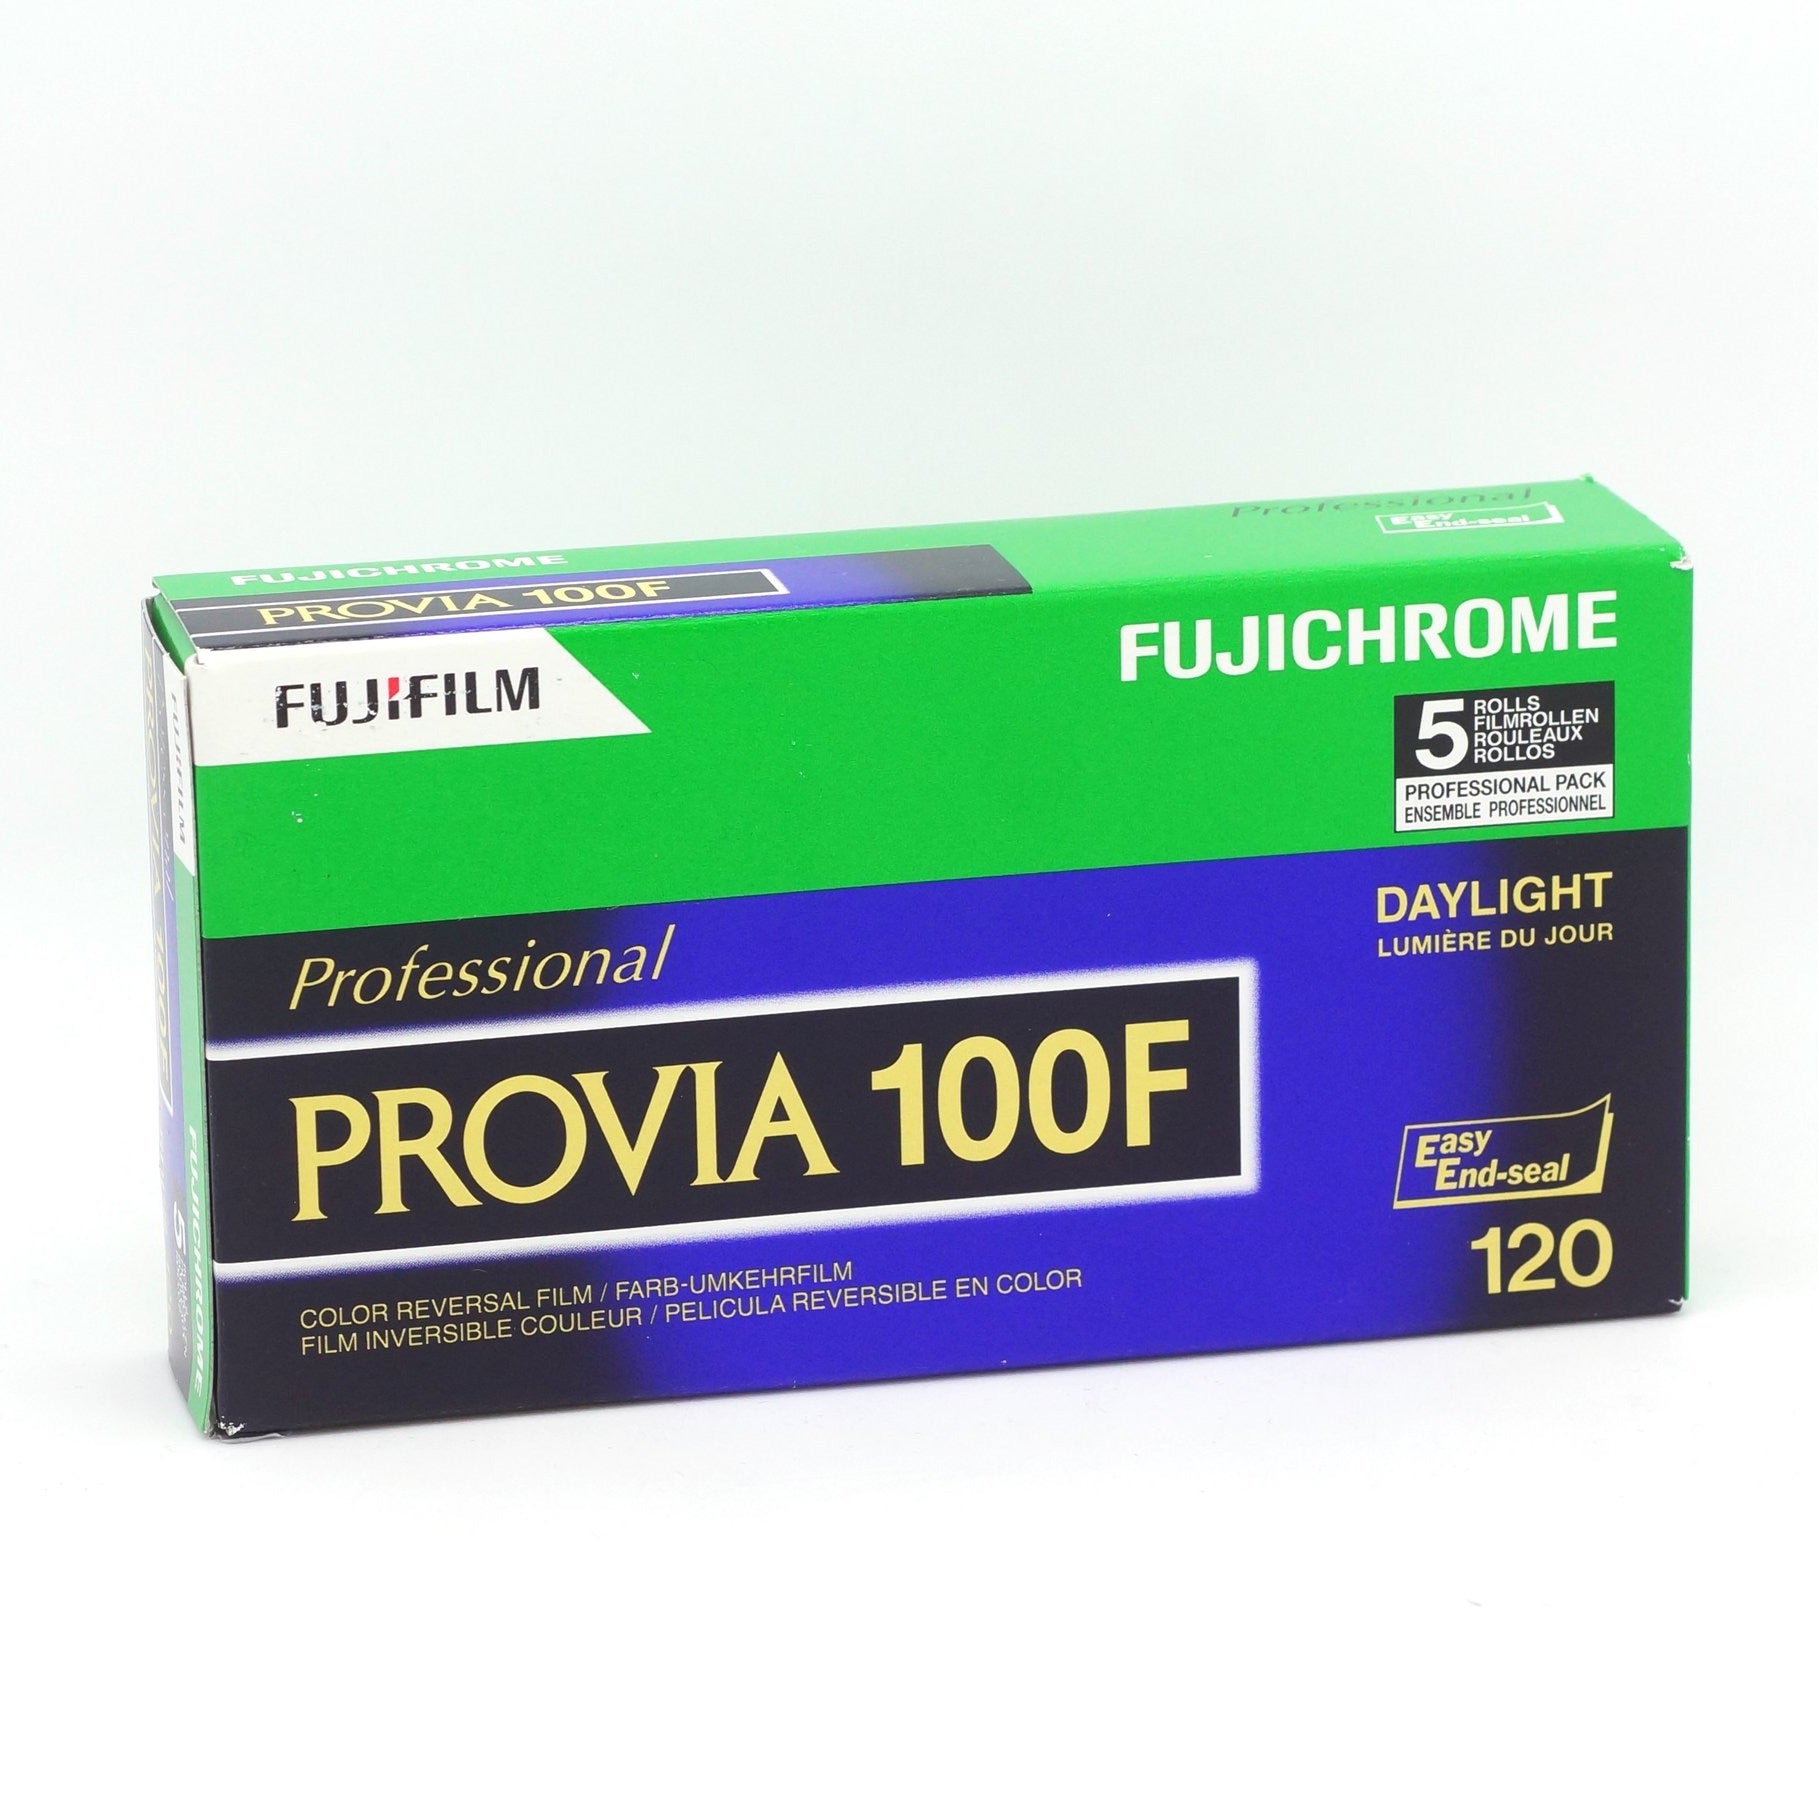 現貨]Fujifilm Provia 100F 120 Film 彩色正片菲林，影像效果細膩平滑